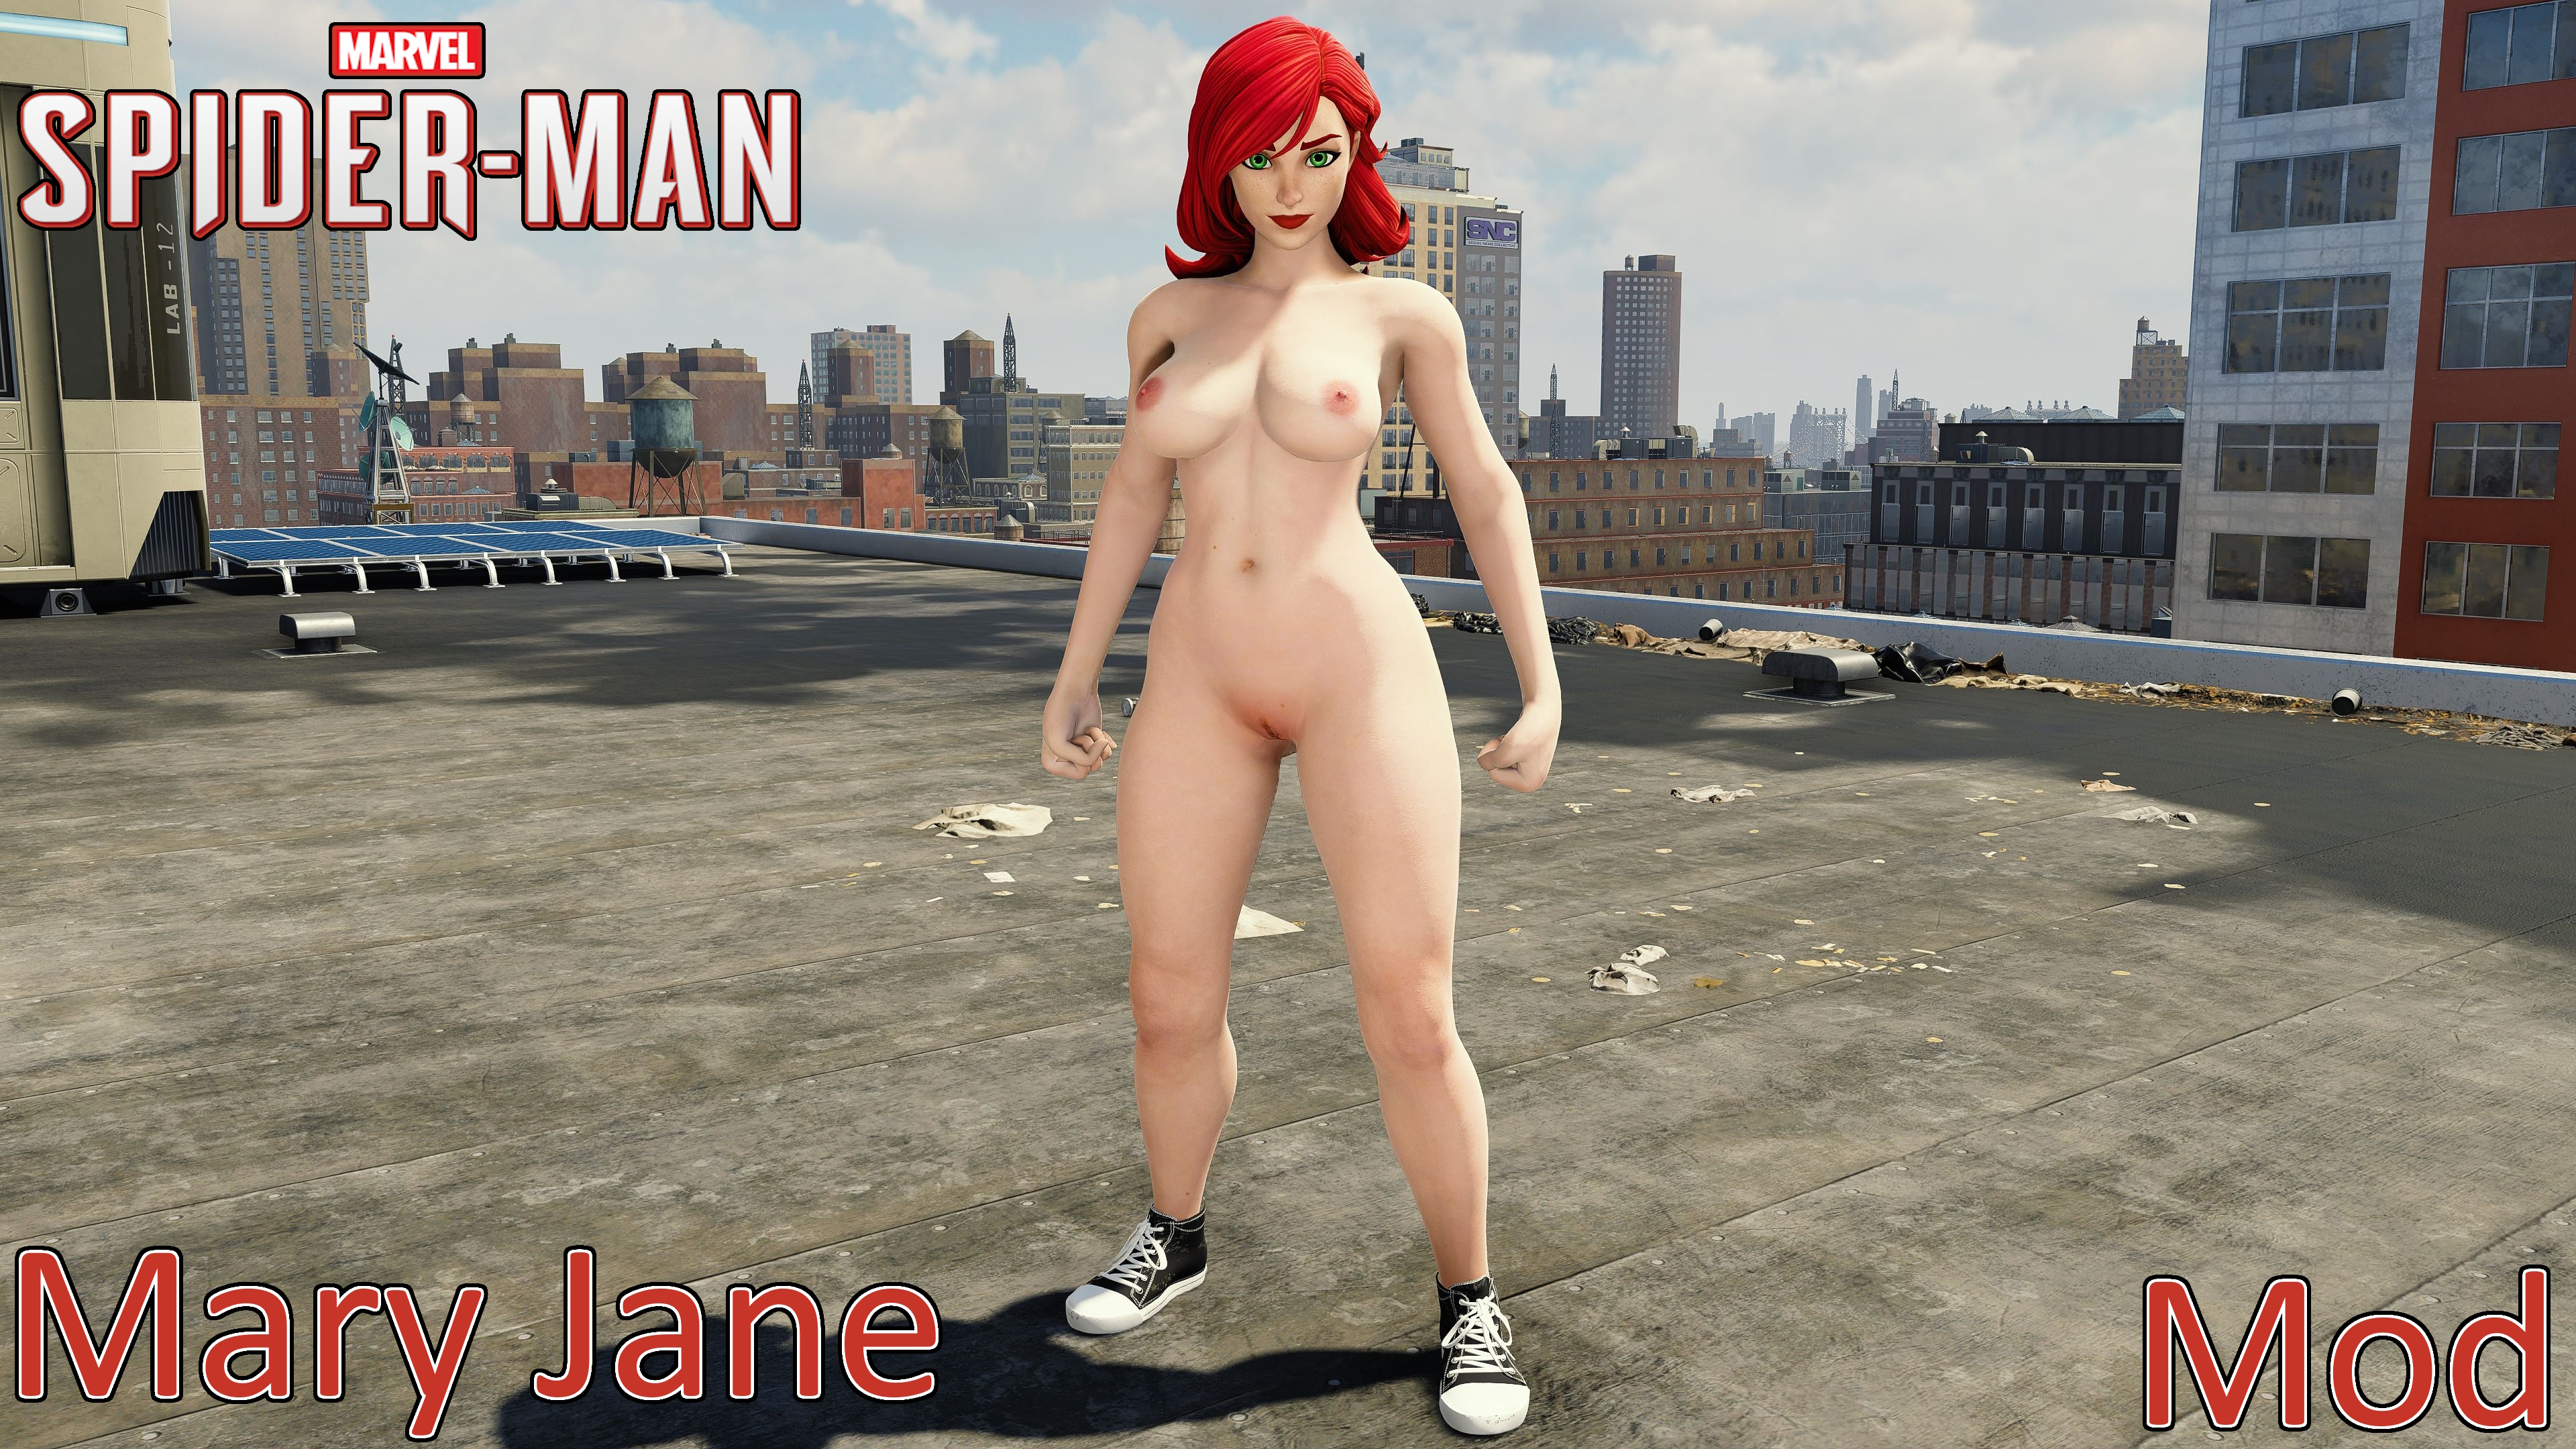 Spiderman mary jane nude